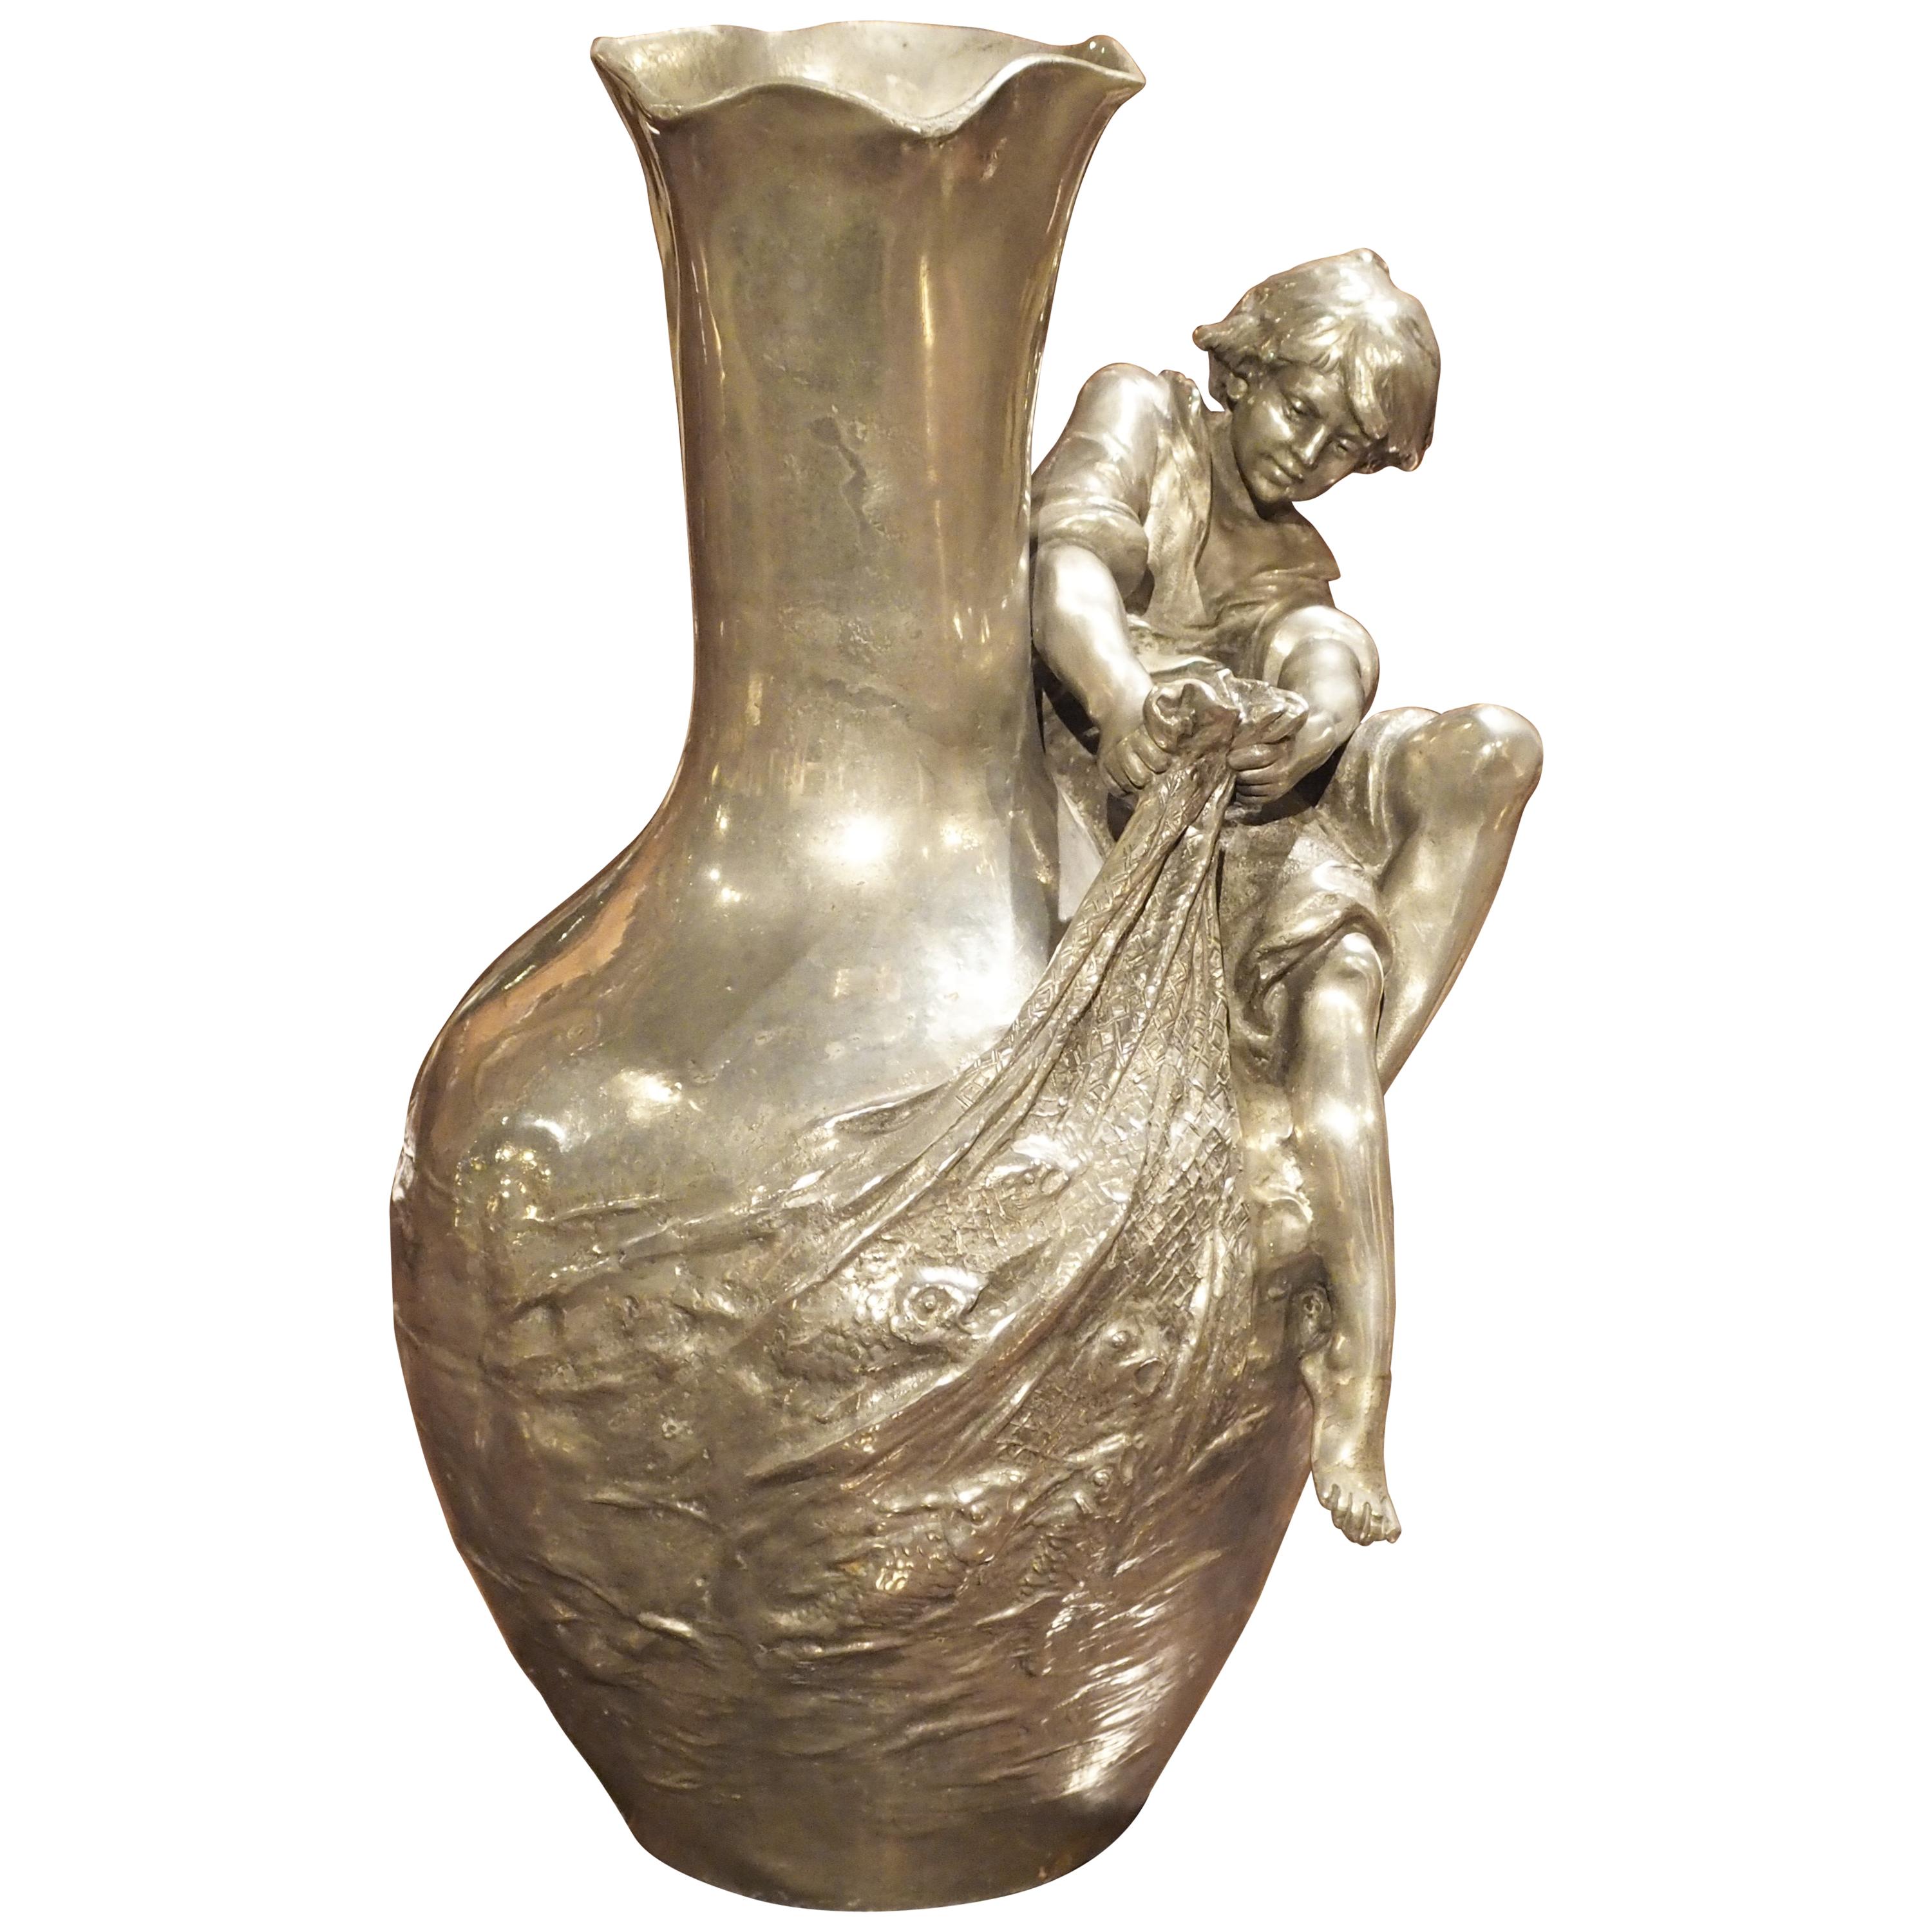 Antique French Pewter Art Nouveau Vase by Auguste Moreau